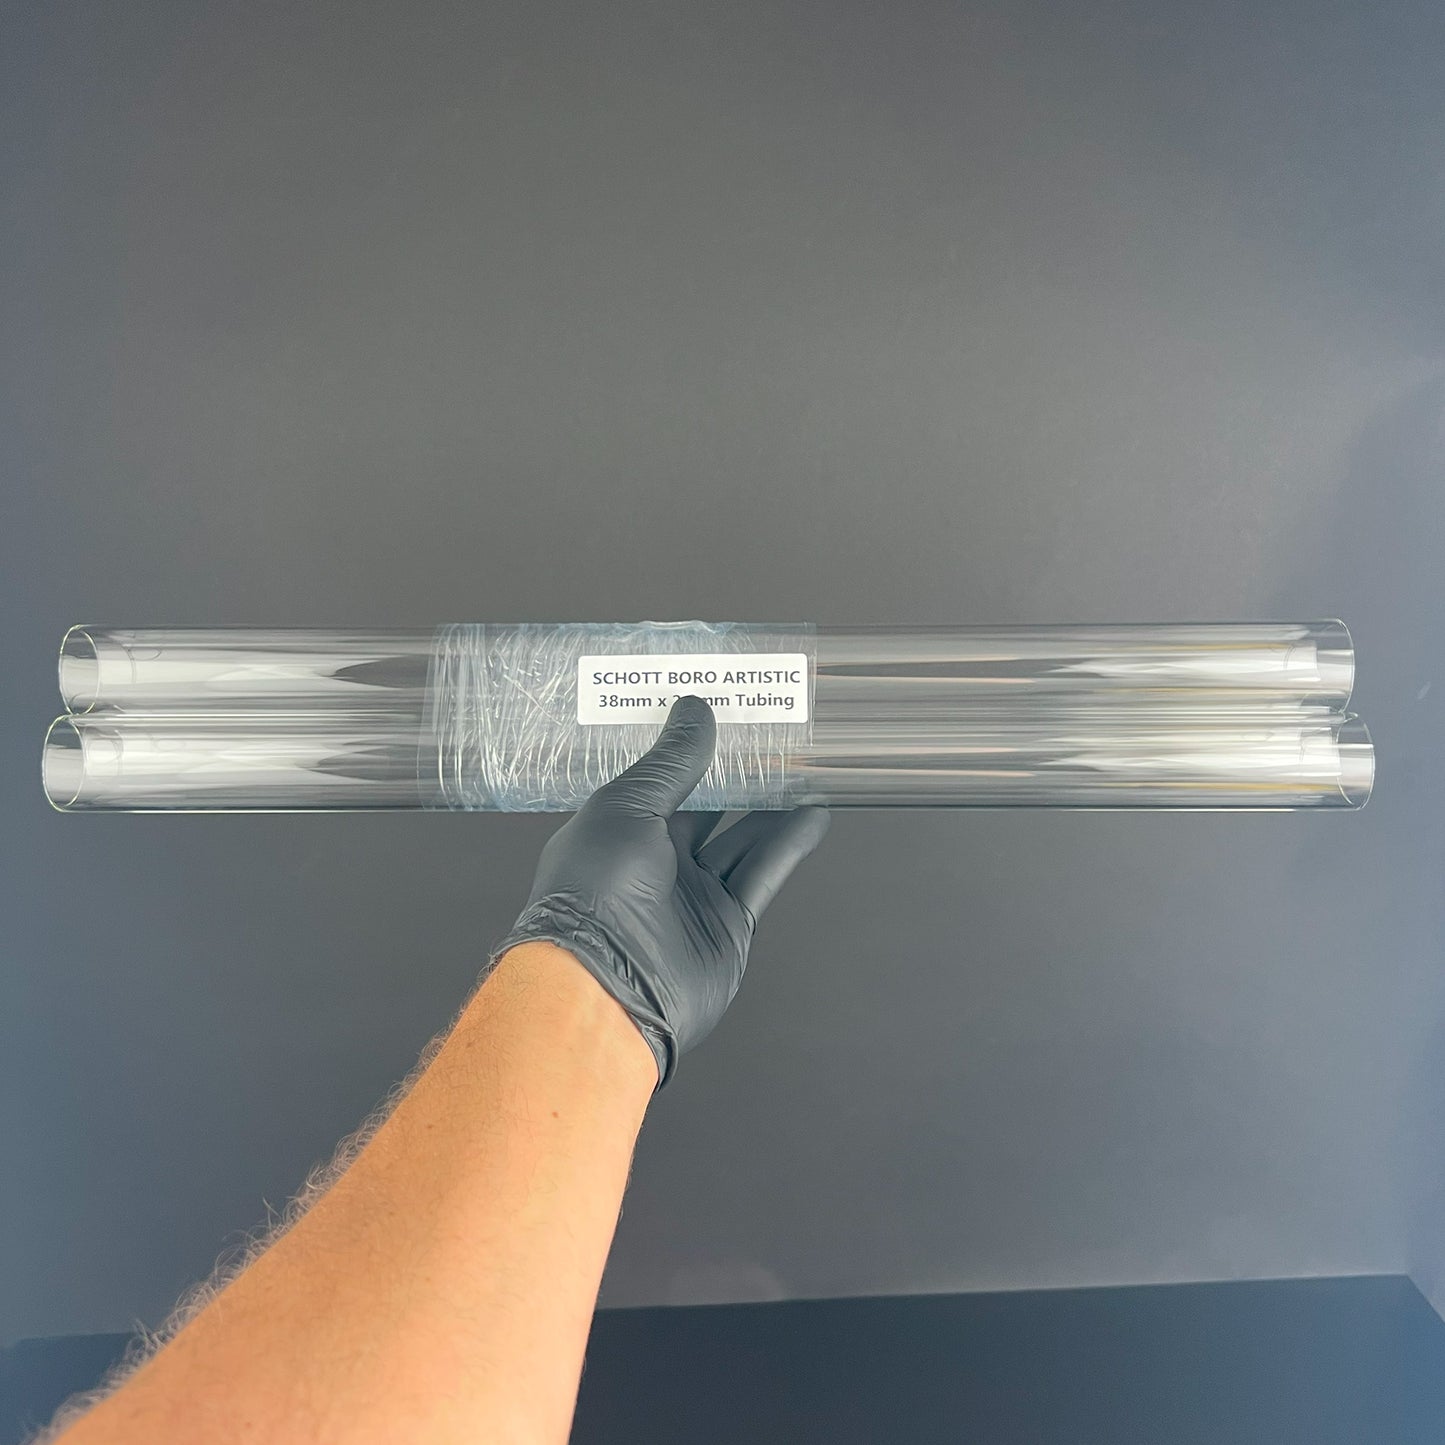 38 mm x 2 mm transparenter Schlauch – Schott Boro Artistic – COE 33 – 1 Stück.